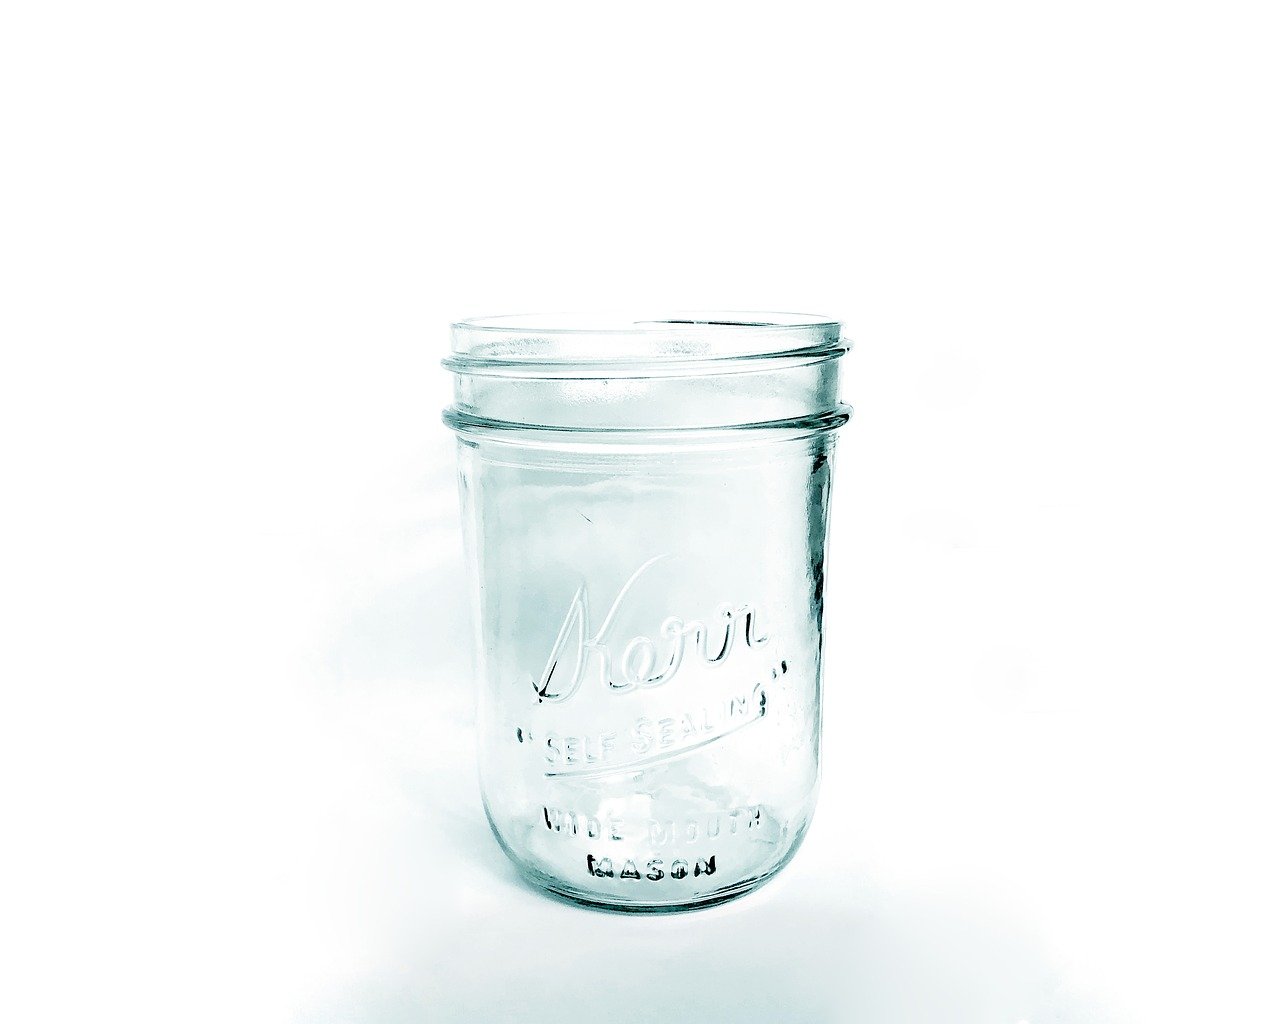 fermented water kefir grains, glass jar